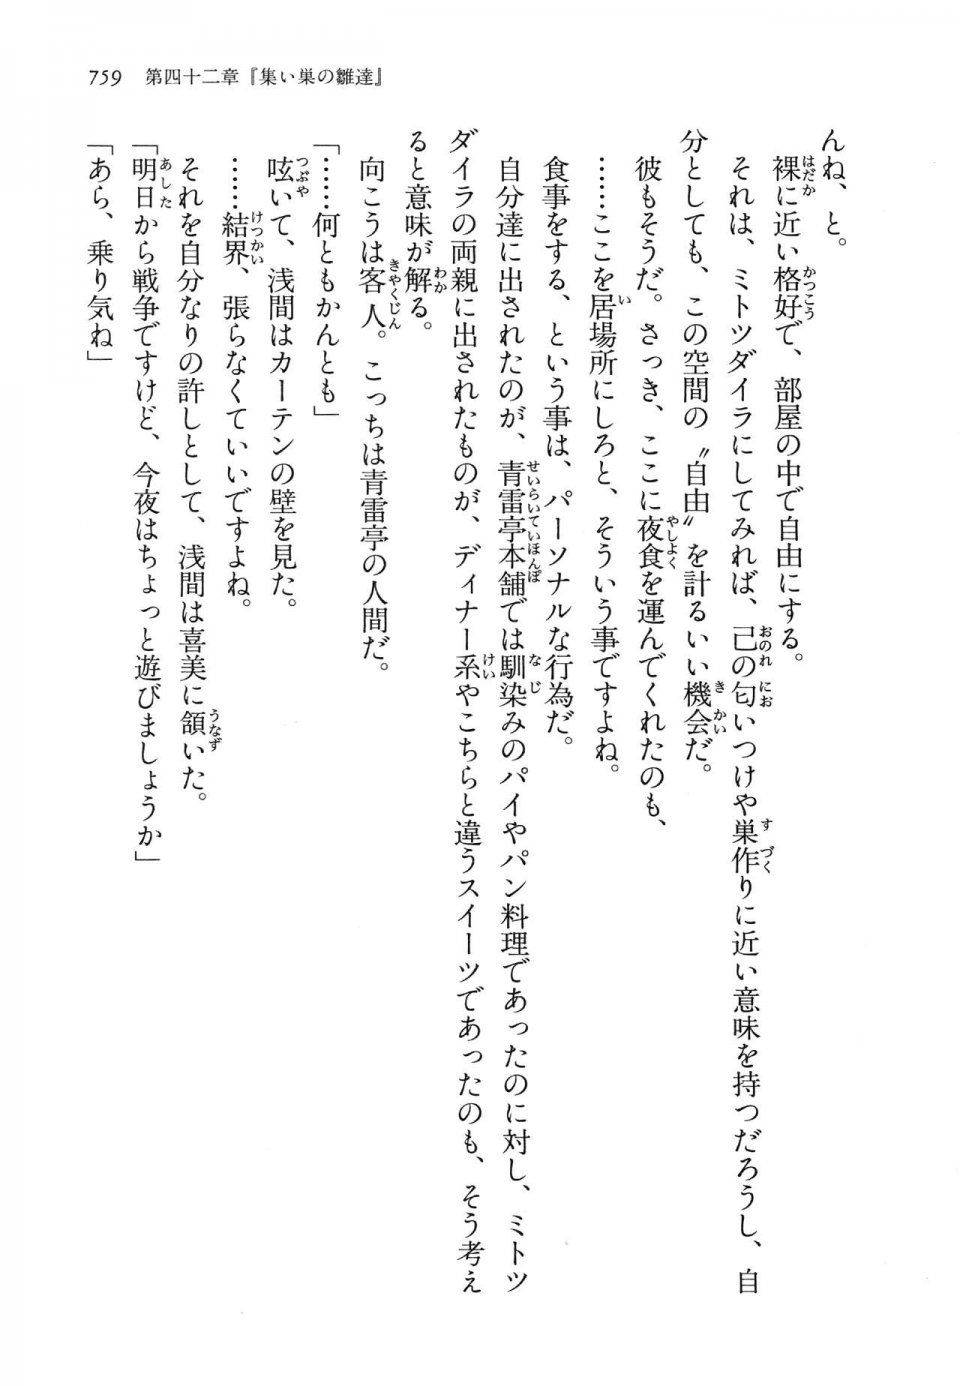 Kyoukai Senjou no Horizon LN Vol 14(6B) - Photo #759